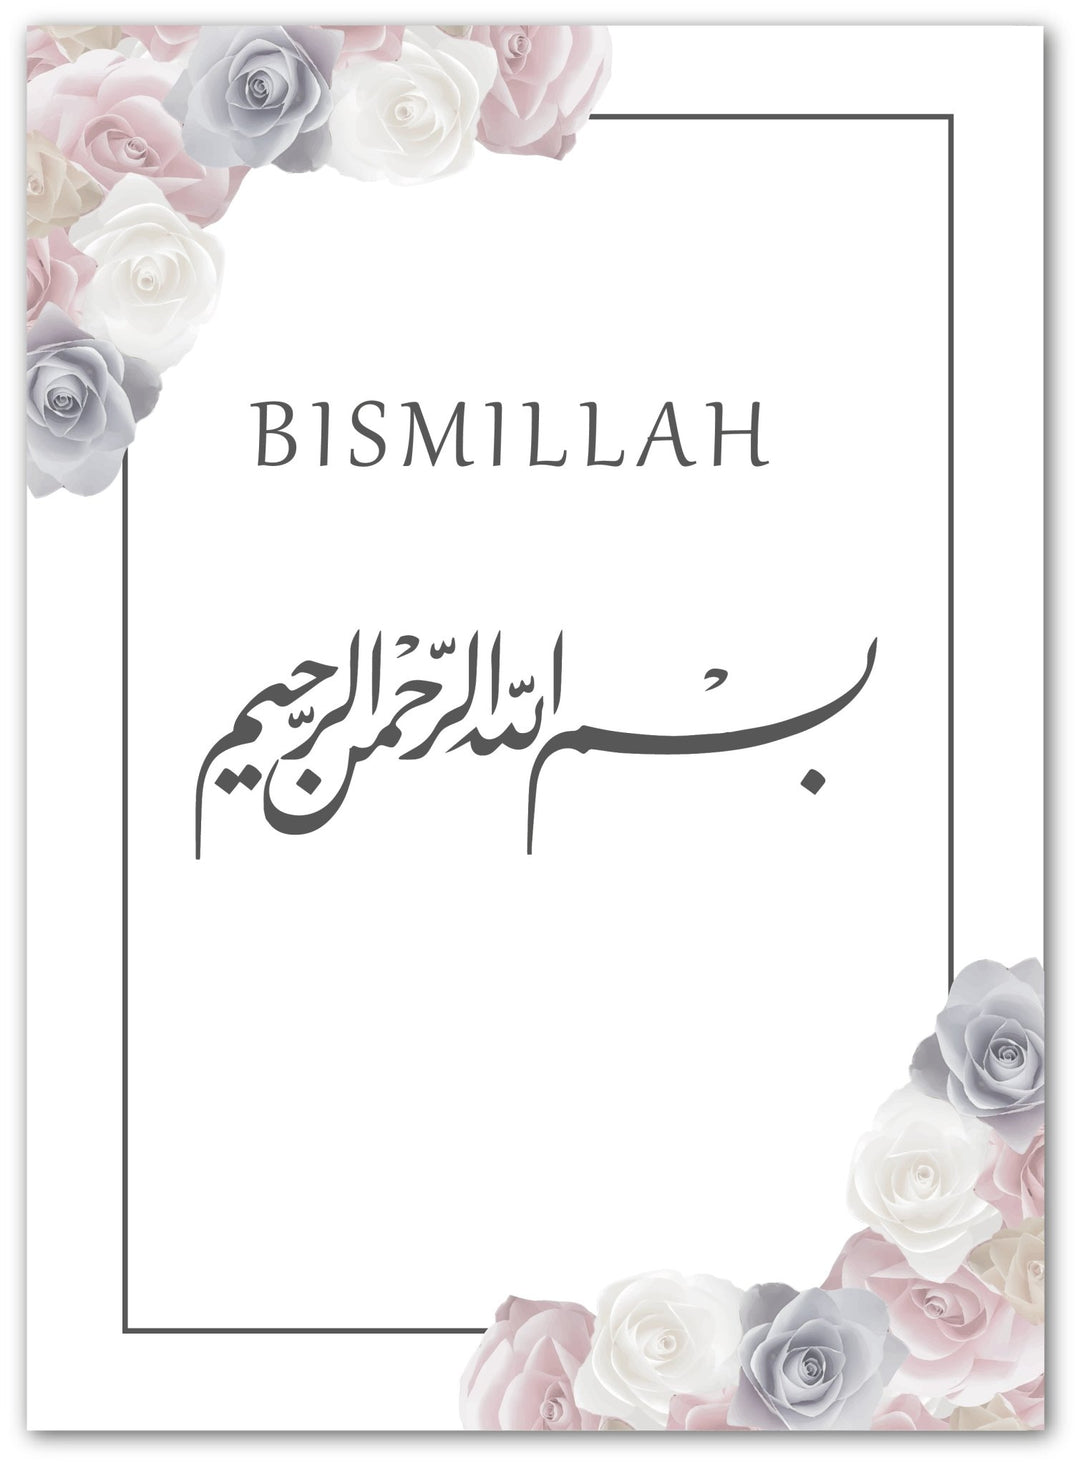 Bismillah mit Rosen - Beautiful Wall